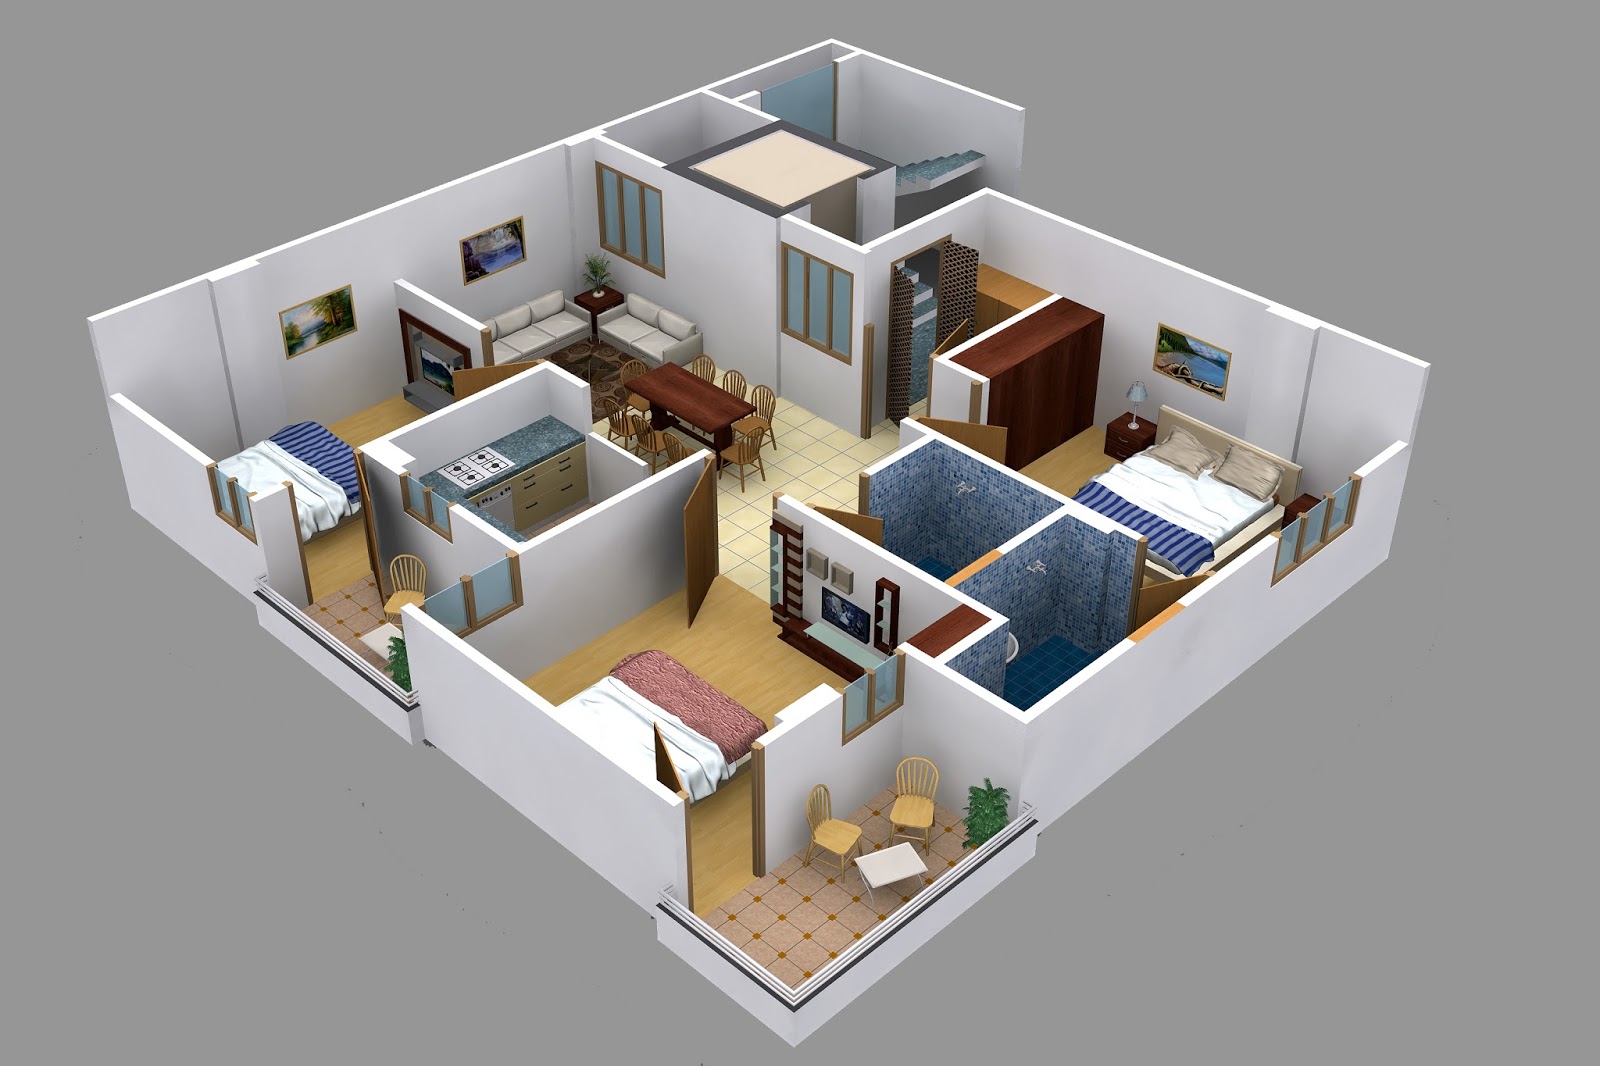 Как спланировать дом онлайн в 3D своими руками? Обзор домов с разными планировками - Плюсы и минусы: Пошаговая инструкция